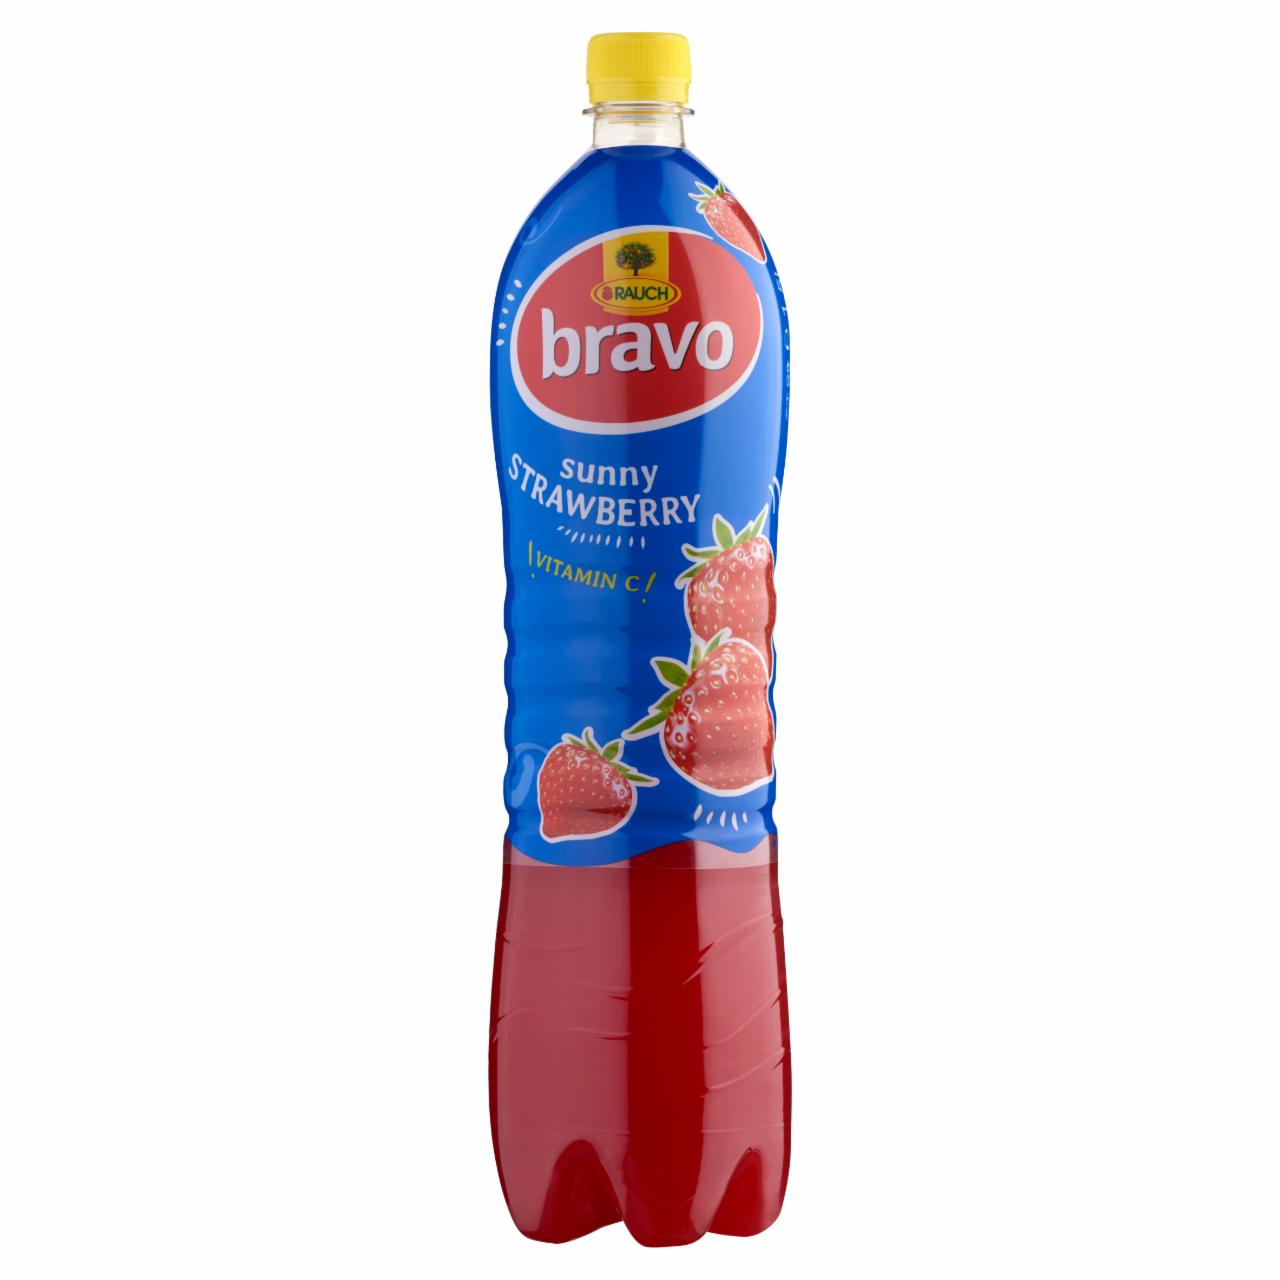 Képek - Rauch Bravo Sunny Strawberry eper ital cukorral, édesítőszerekkel és C-vitaminnal 1,5 l